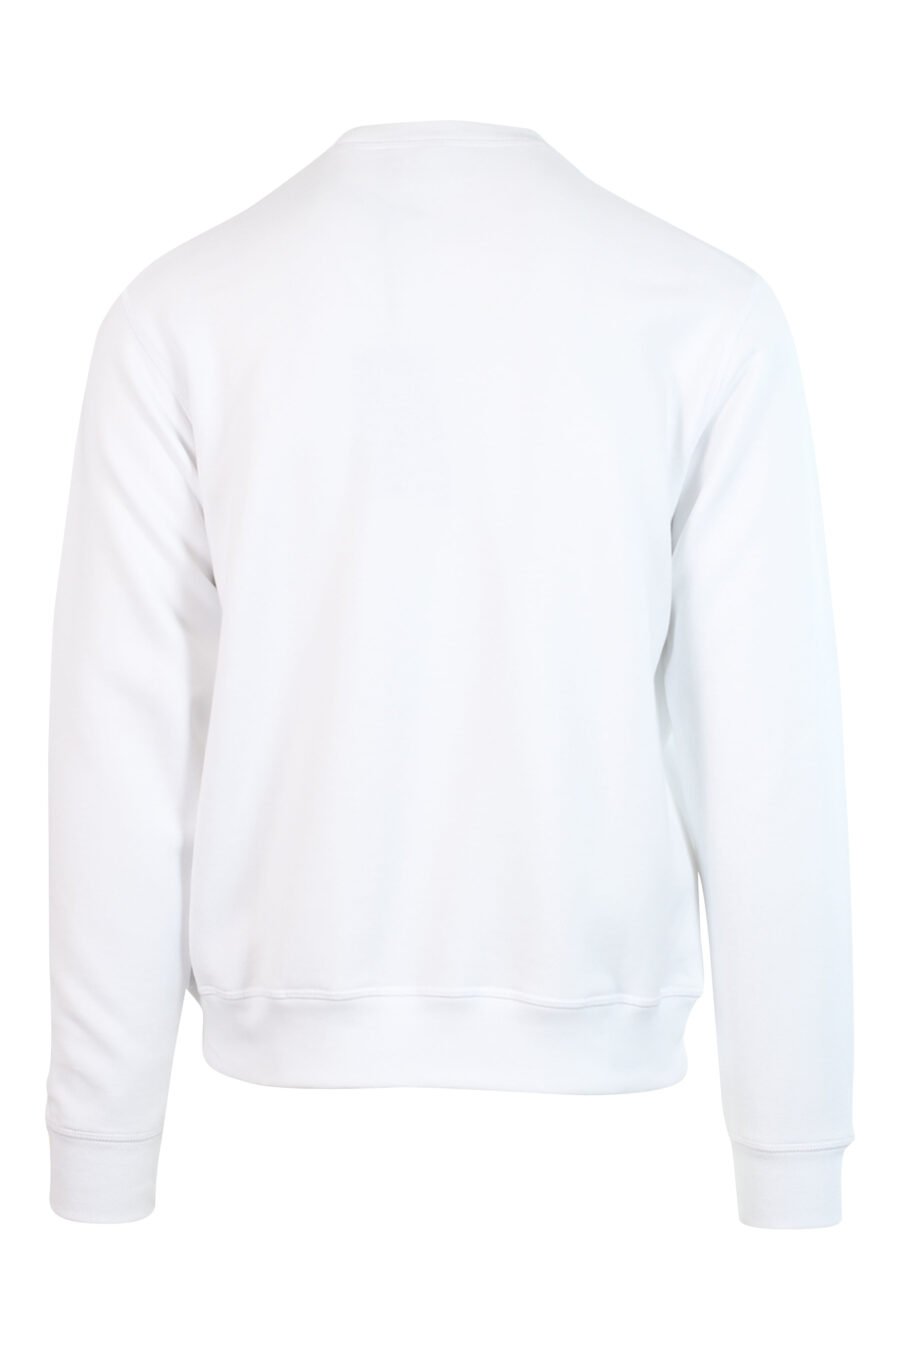 Camisola branca com mini-logotipo preto "icon" no meio - 8052134565063 2